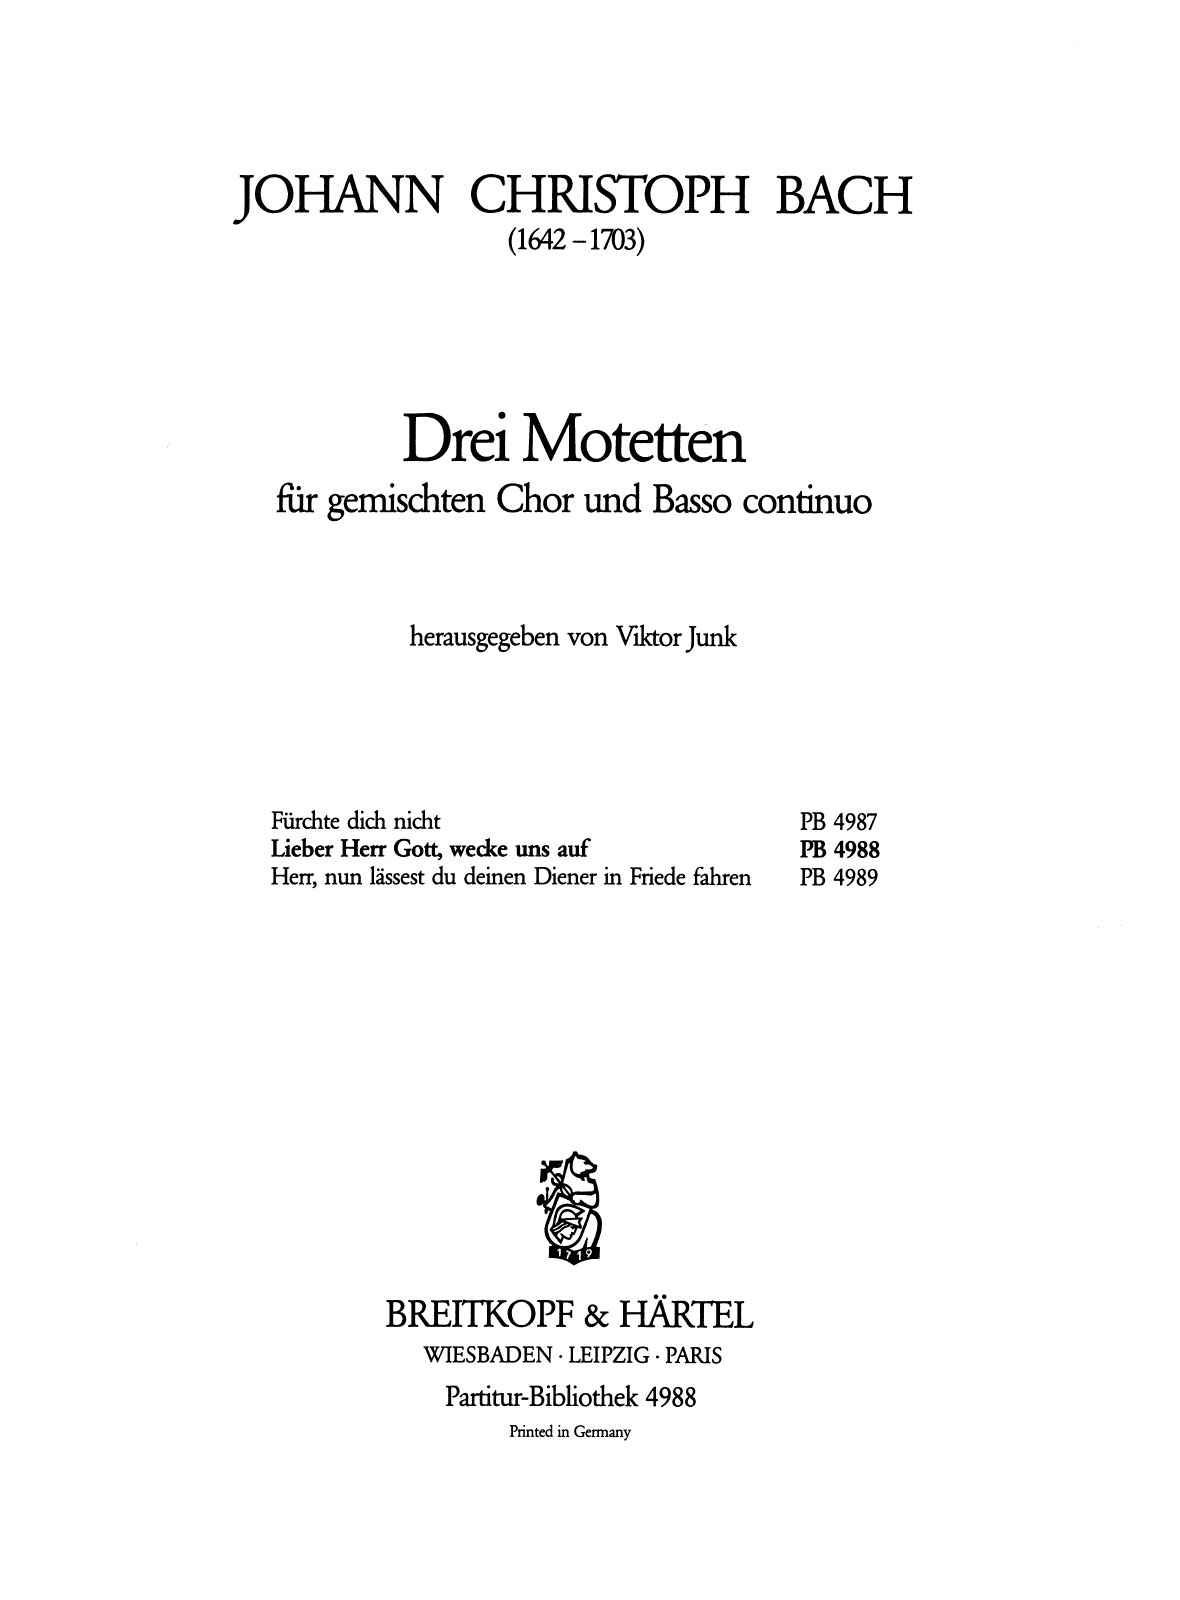 Johann Christoph Friedrich Bach: Lieber Herr Gott: Score